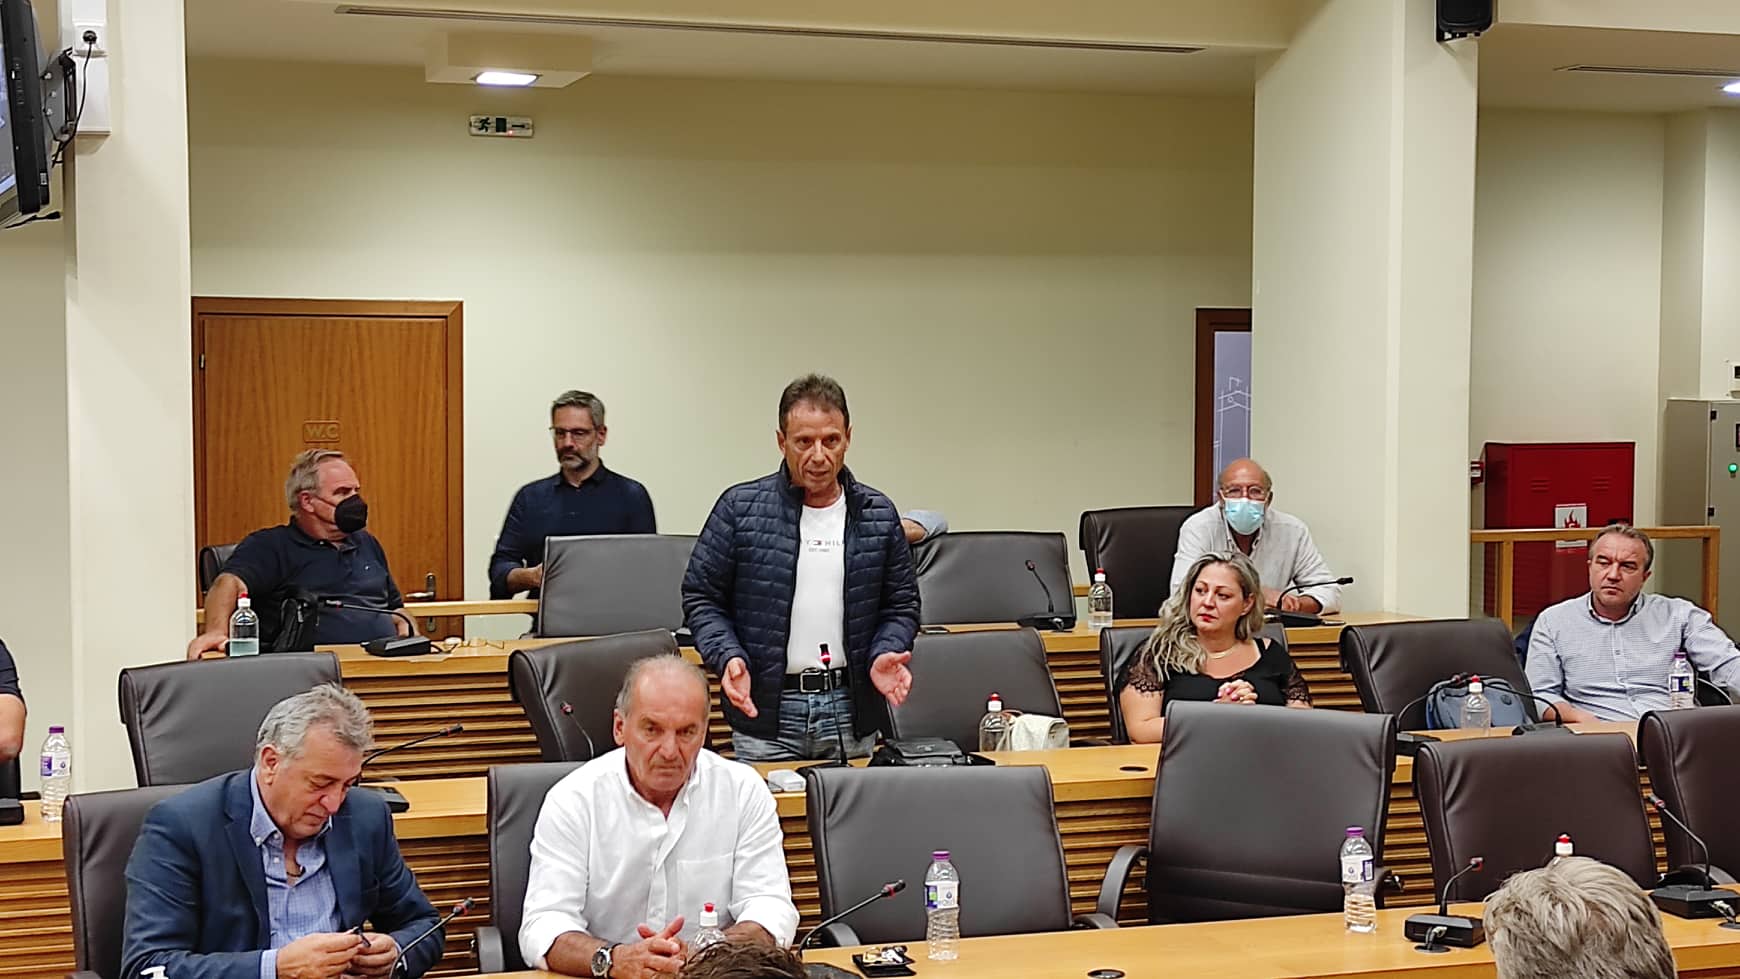 Δημοτικό Συμβούλιο Κοζάνης: Η Μετεγκατάσταση Ποντοκώμης Είναι Μια Σύνθετη Διαδικασία 